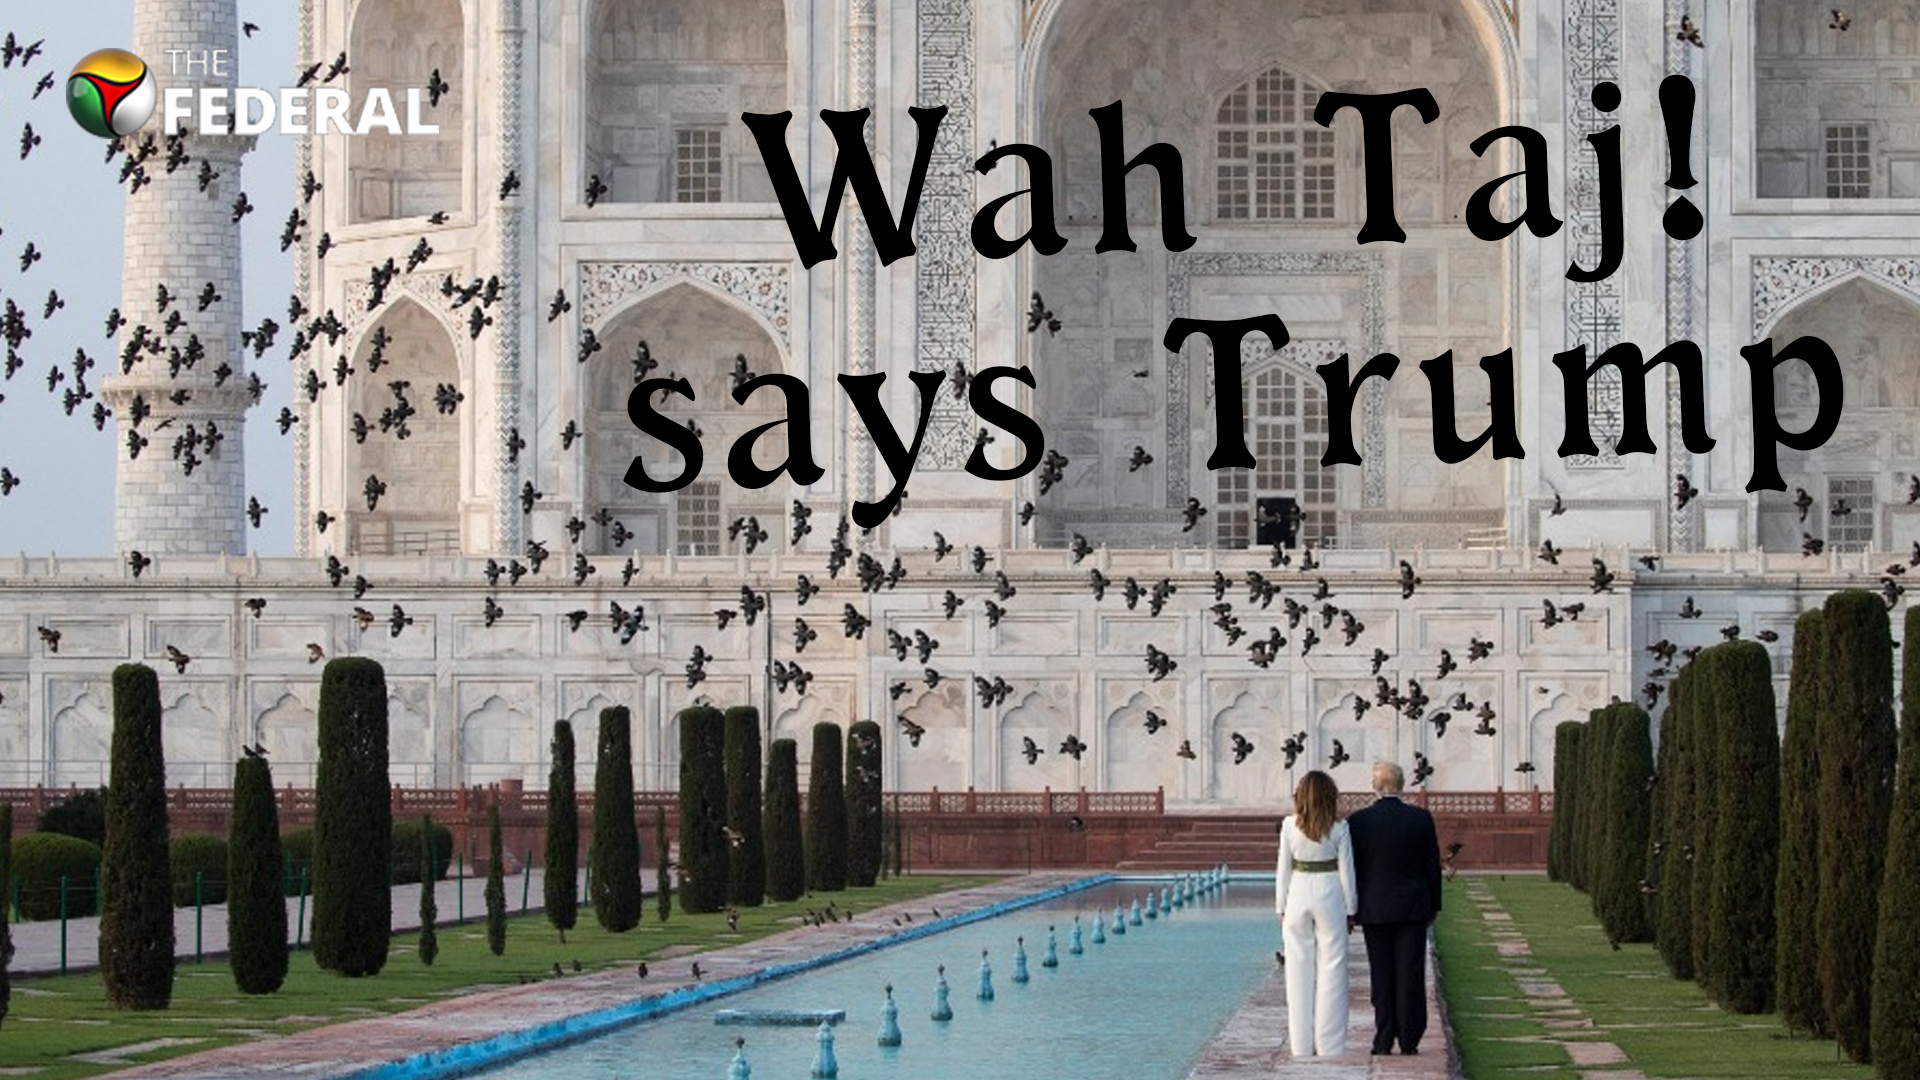 Wah Taj, says Trump